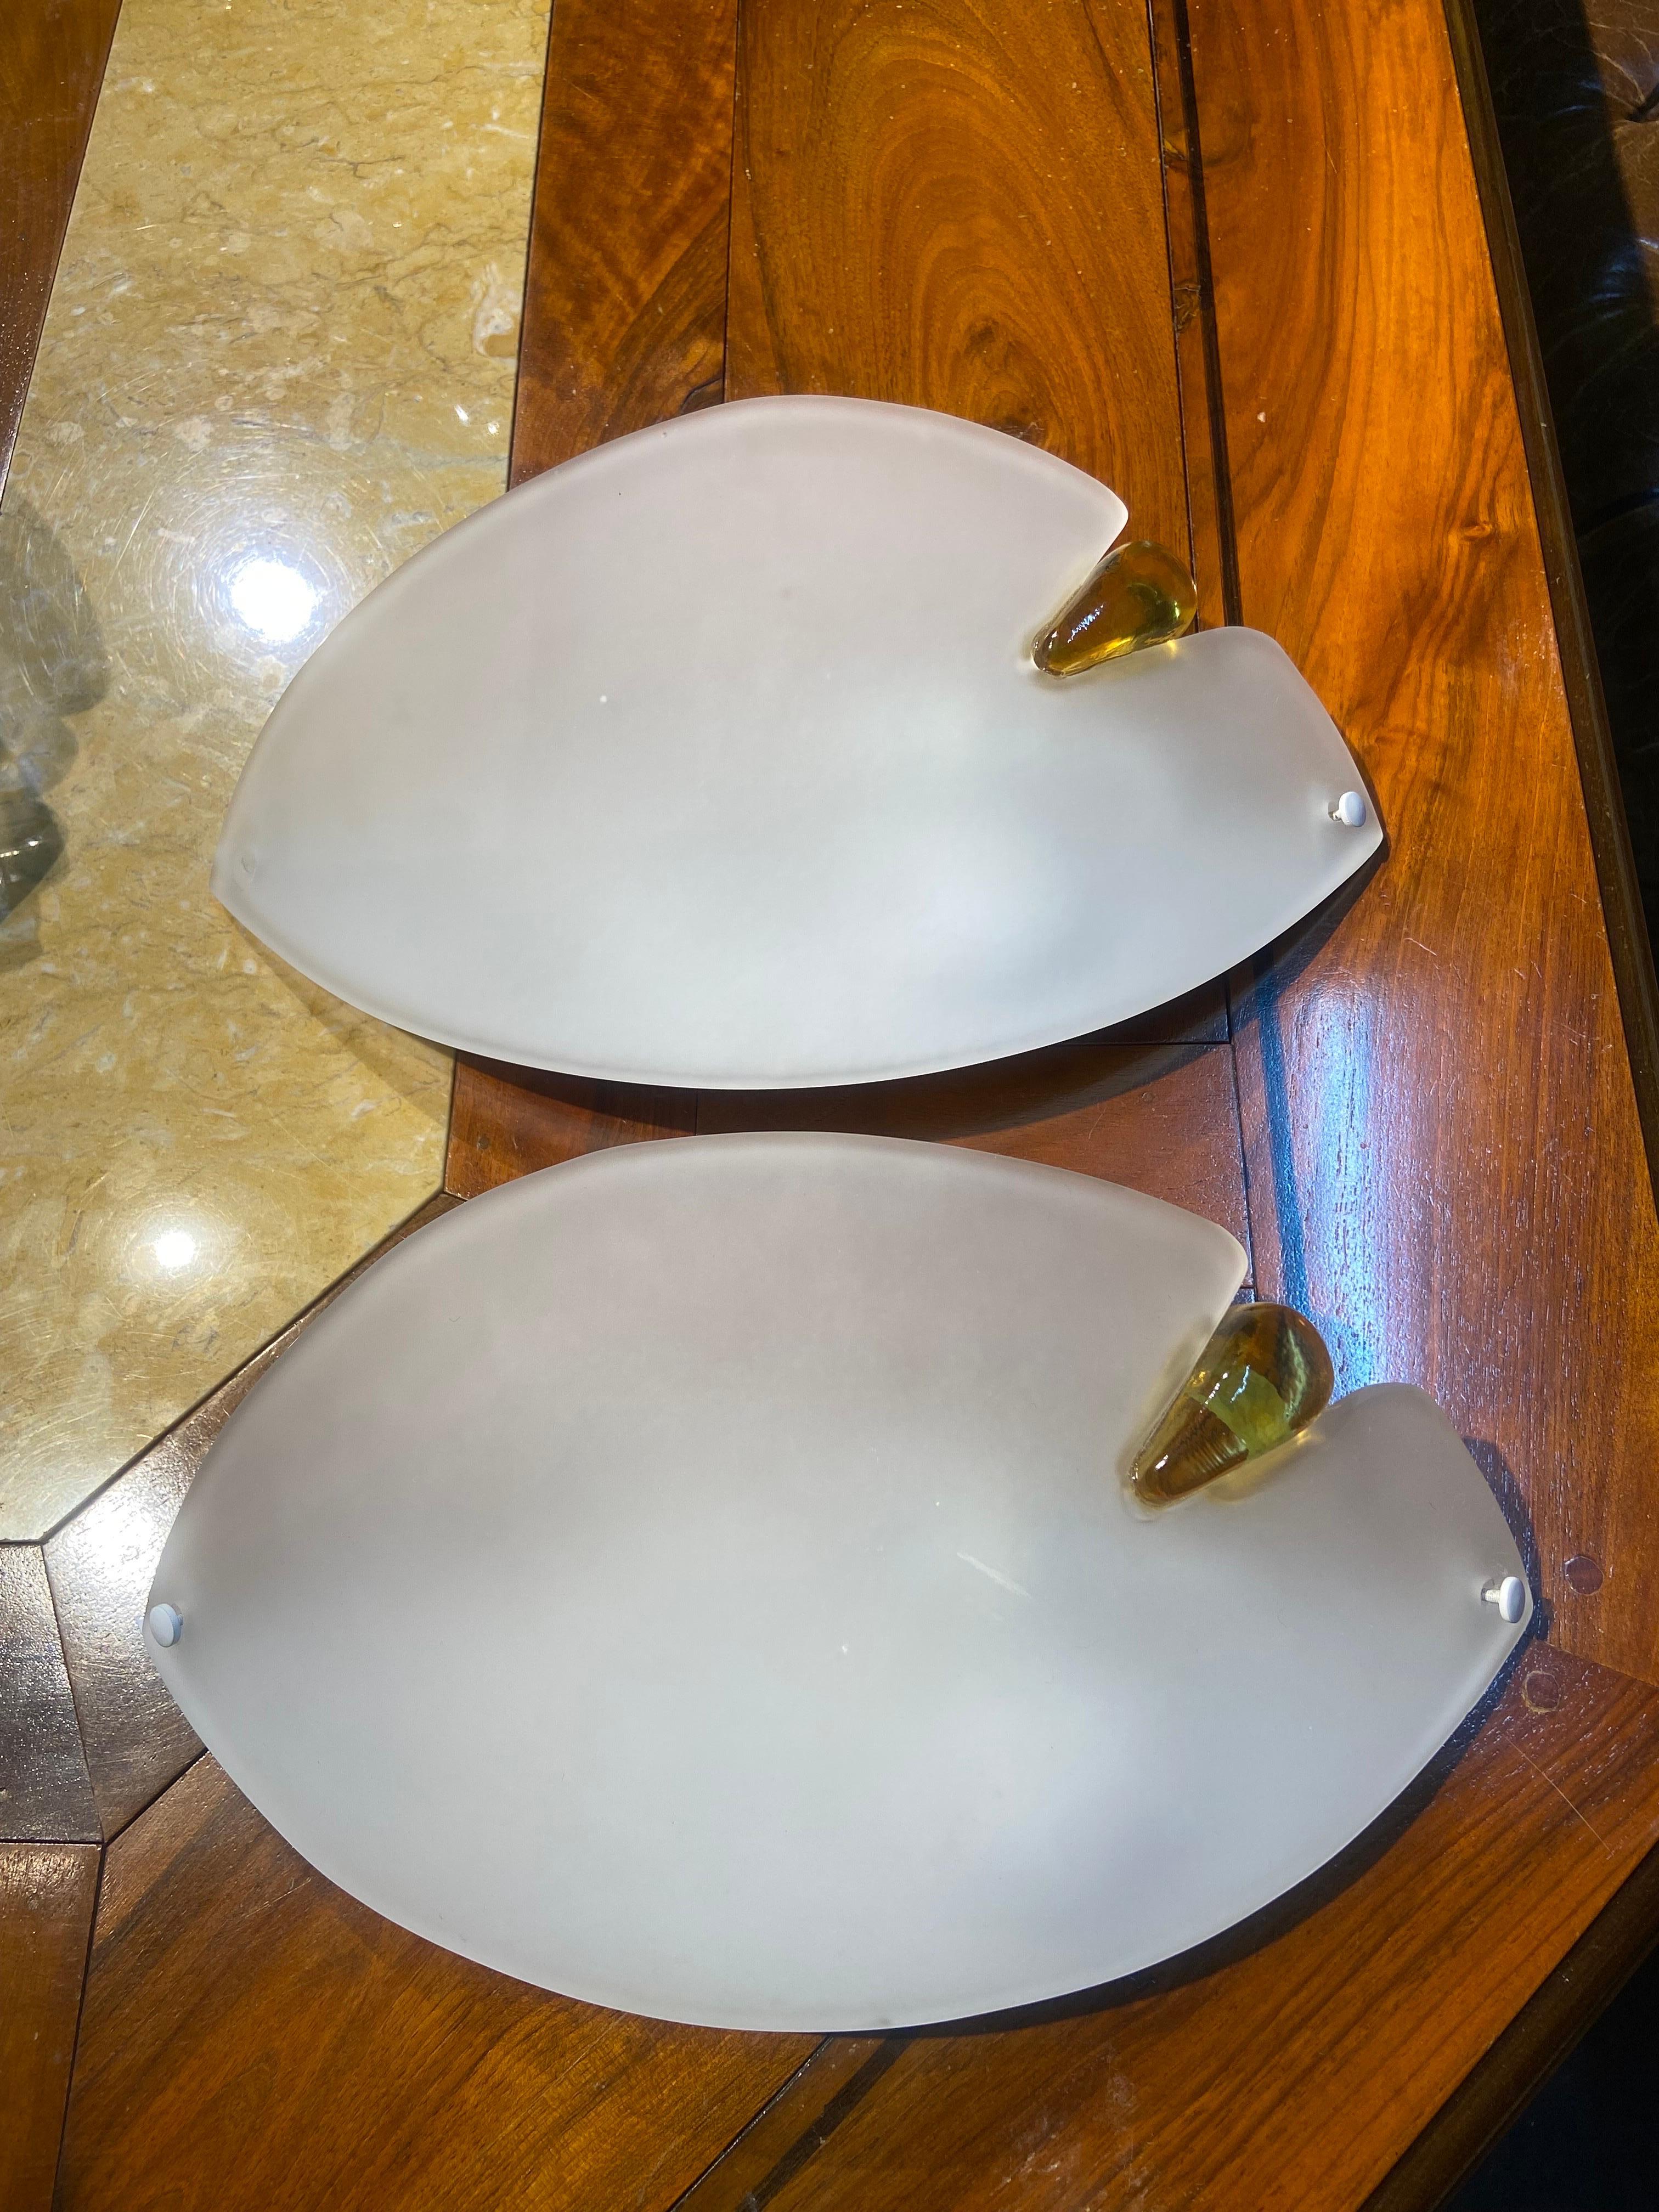 Deux appliques modernes italiennes AV Mazecor en verre de Murano fait à la main avec finition satinée en forme d'œil avec décoration latérale jaune.
Fondée en 1946 par Gianni Bruno Mazzega, la société AVMazzega apporte des siècles d'expérience et de